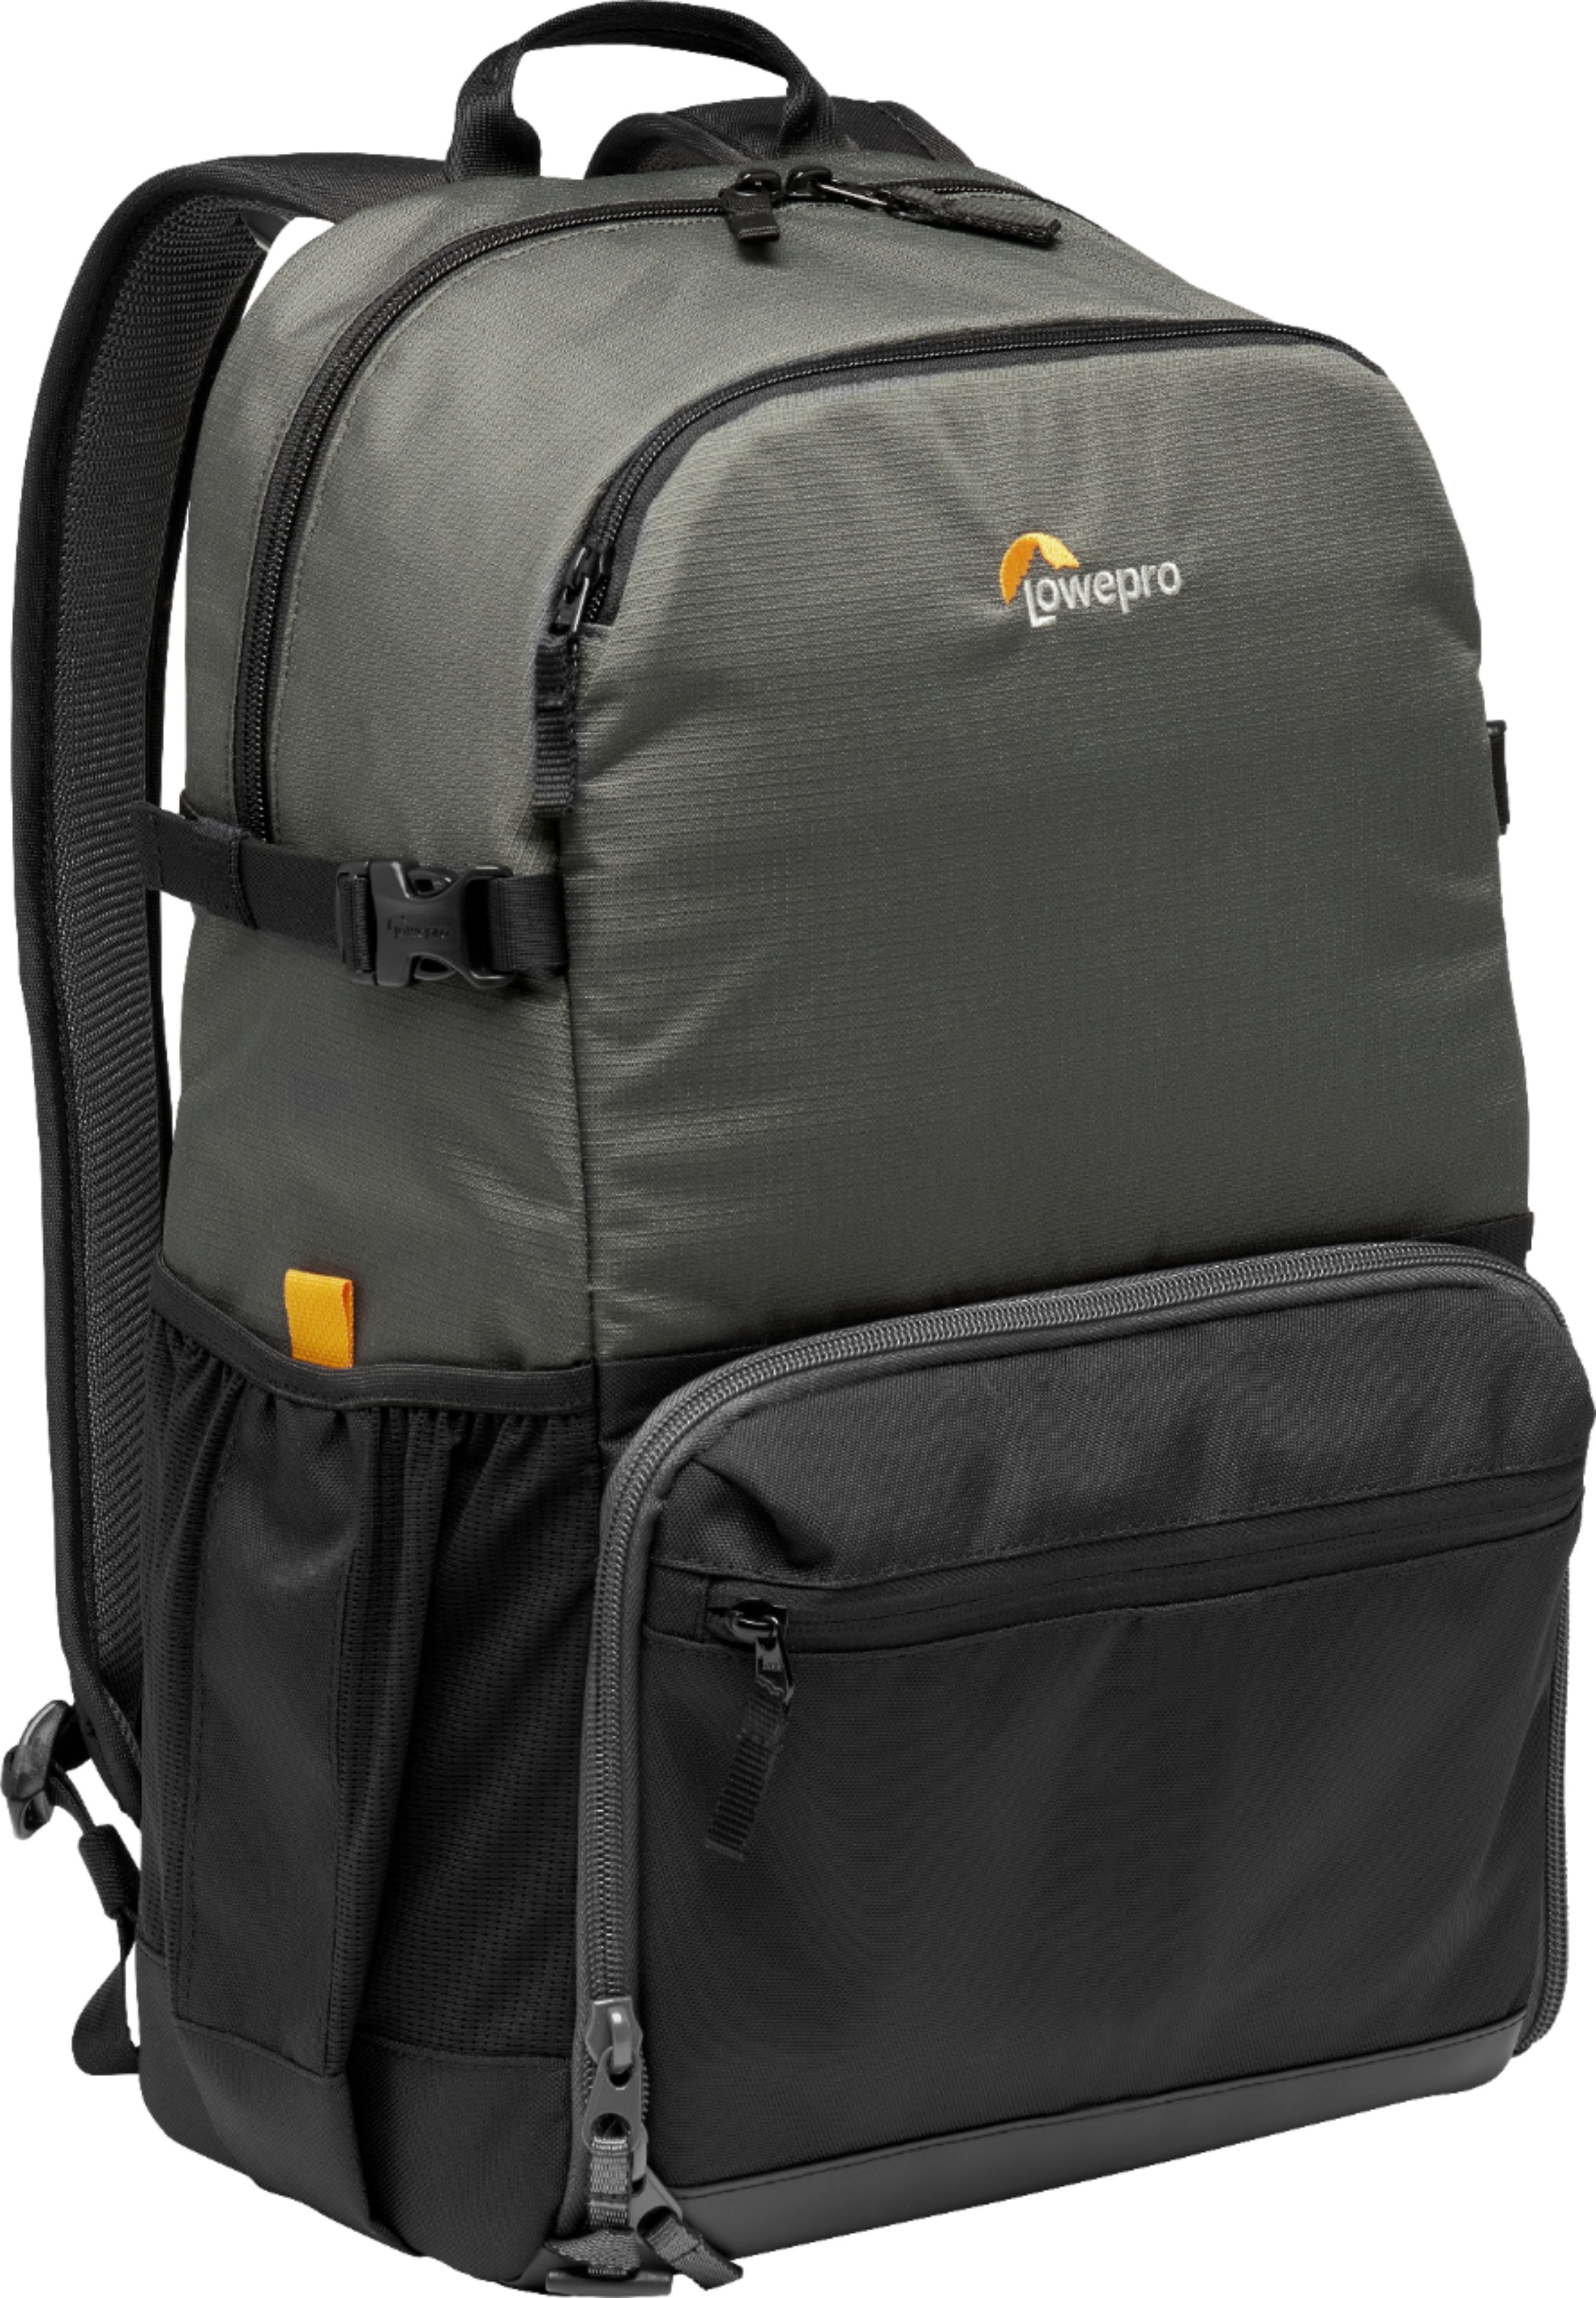 lowepro photo backpack